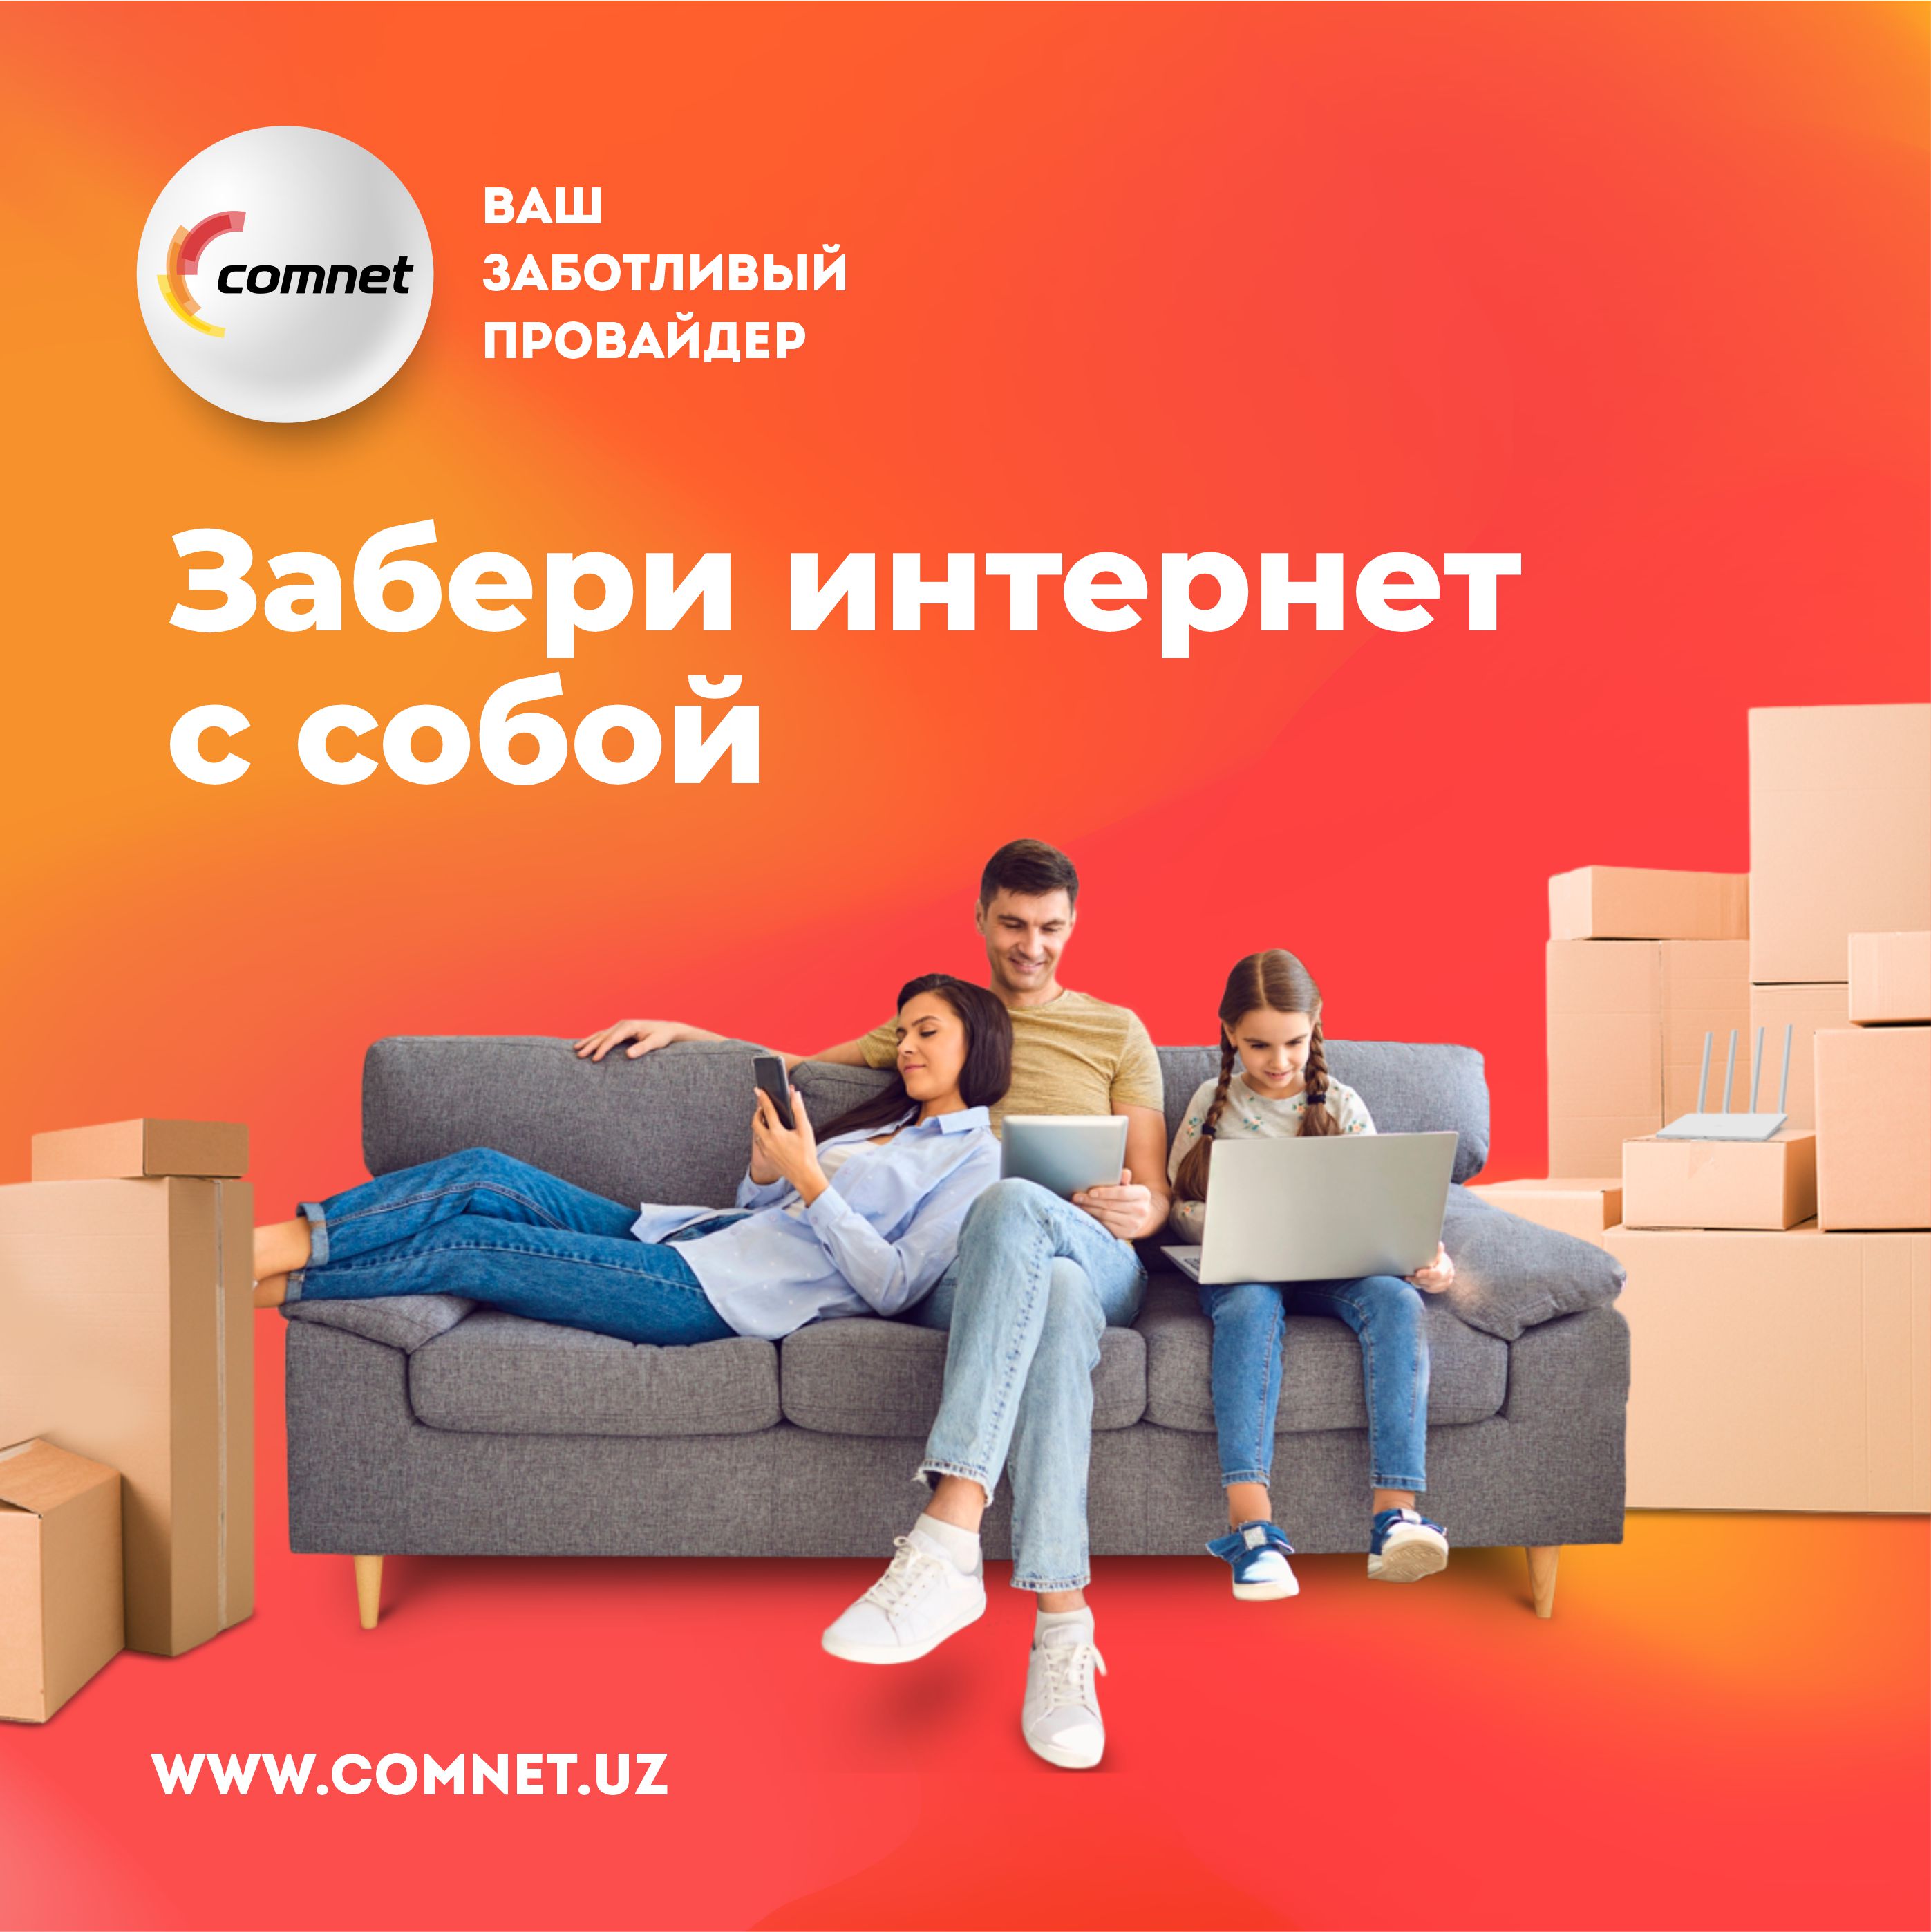 Comnet uz. COMNET Ташкент. Скоростной интернет реклама. Комнет компания. Комнет провайдер логотип.